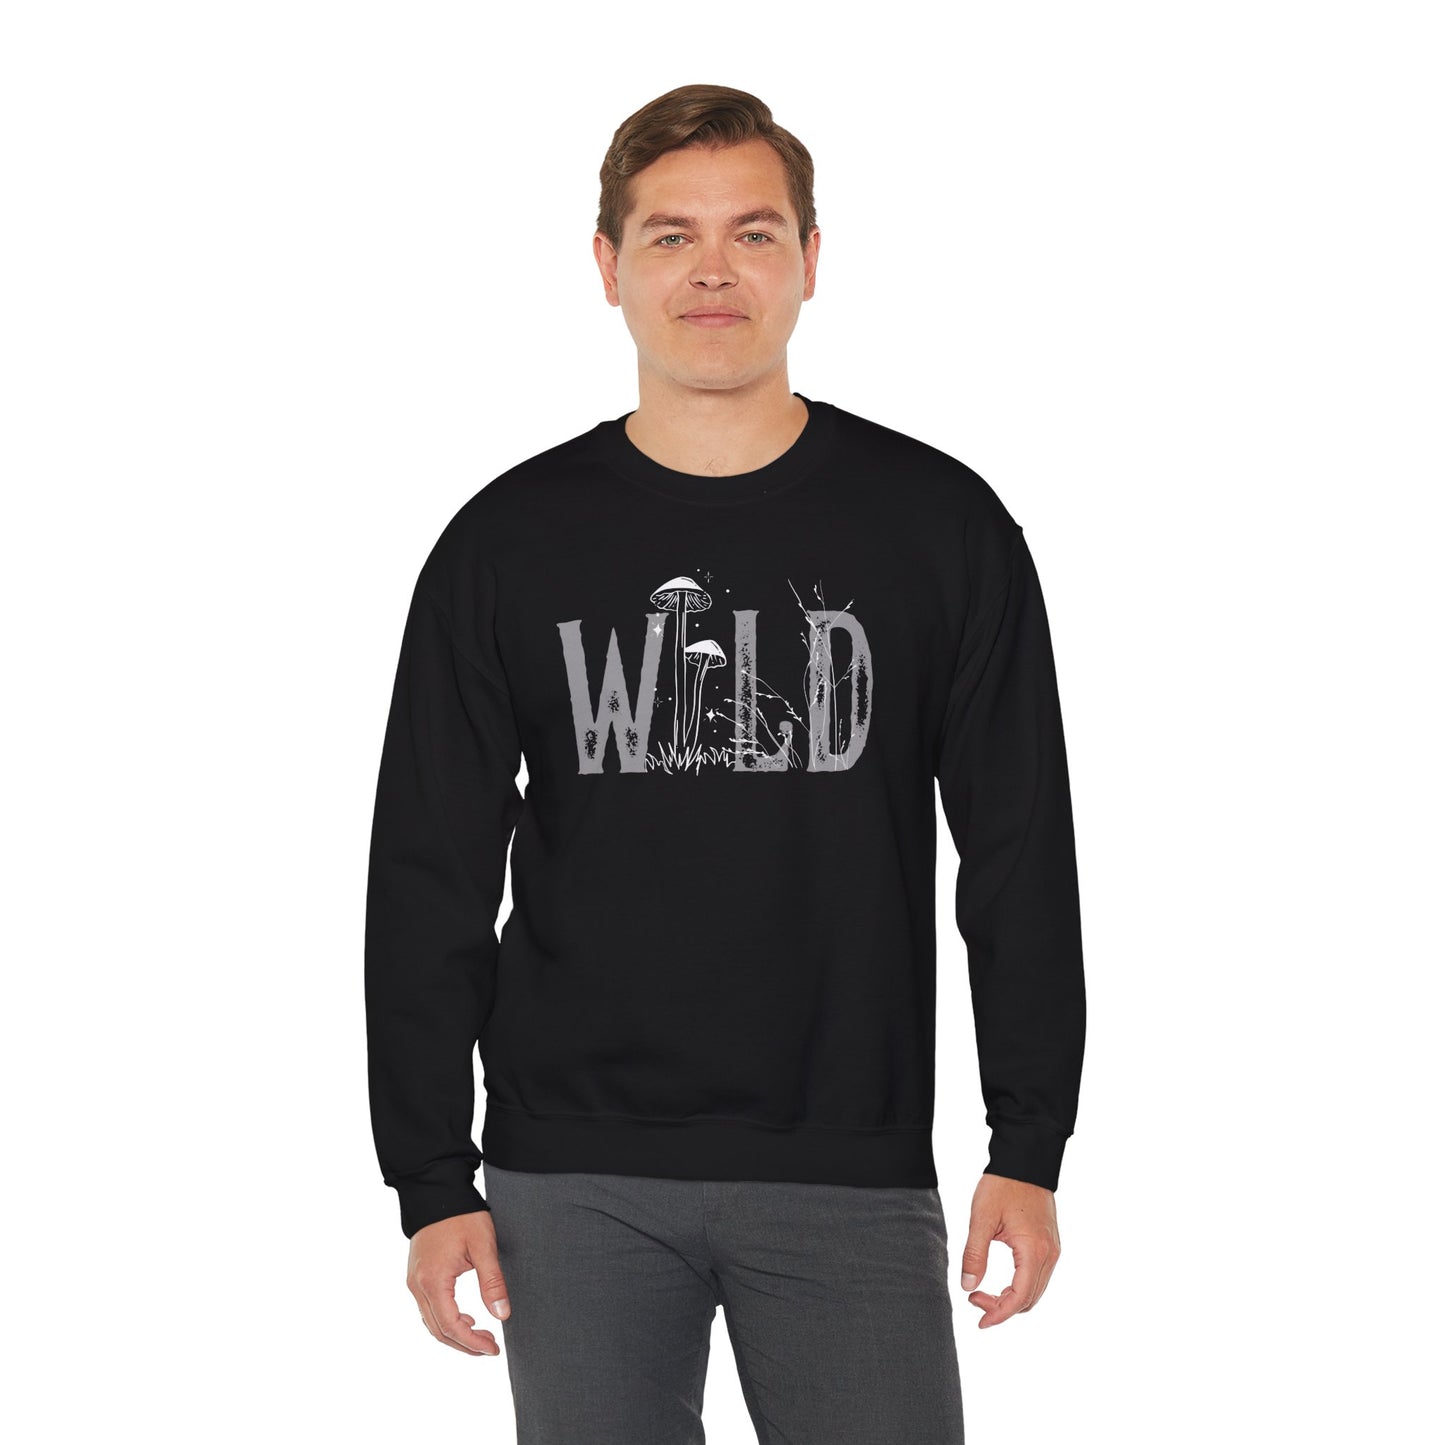 Wild Mushroom Crewneck Sweatshirt